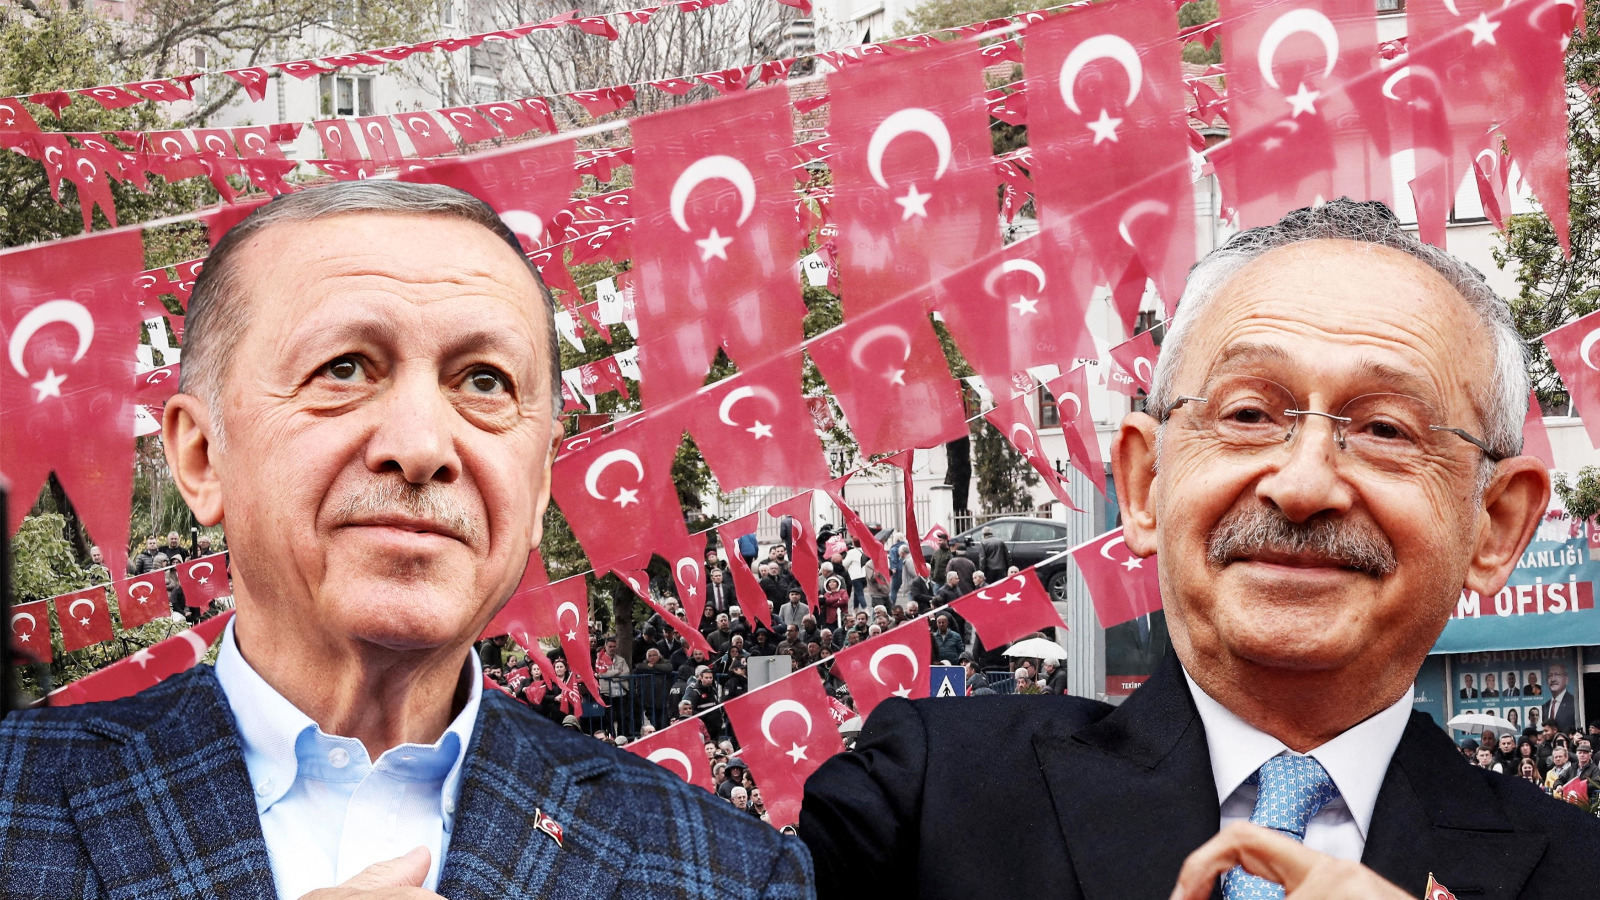 رسمياً .. إعلان النتائج النهائية للجولة الأولى في الانتخابات التركية